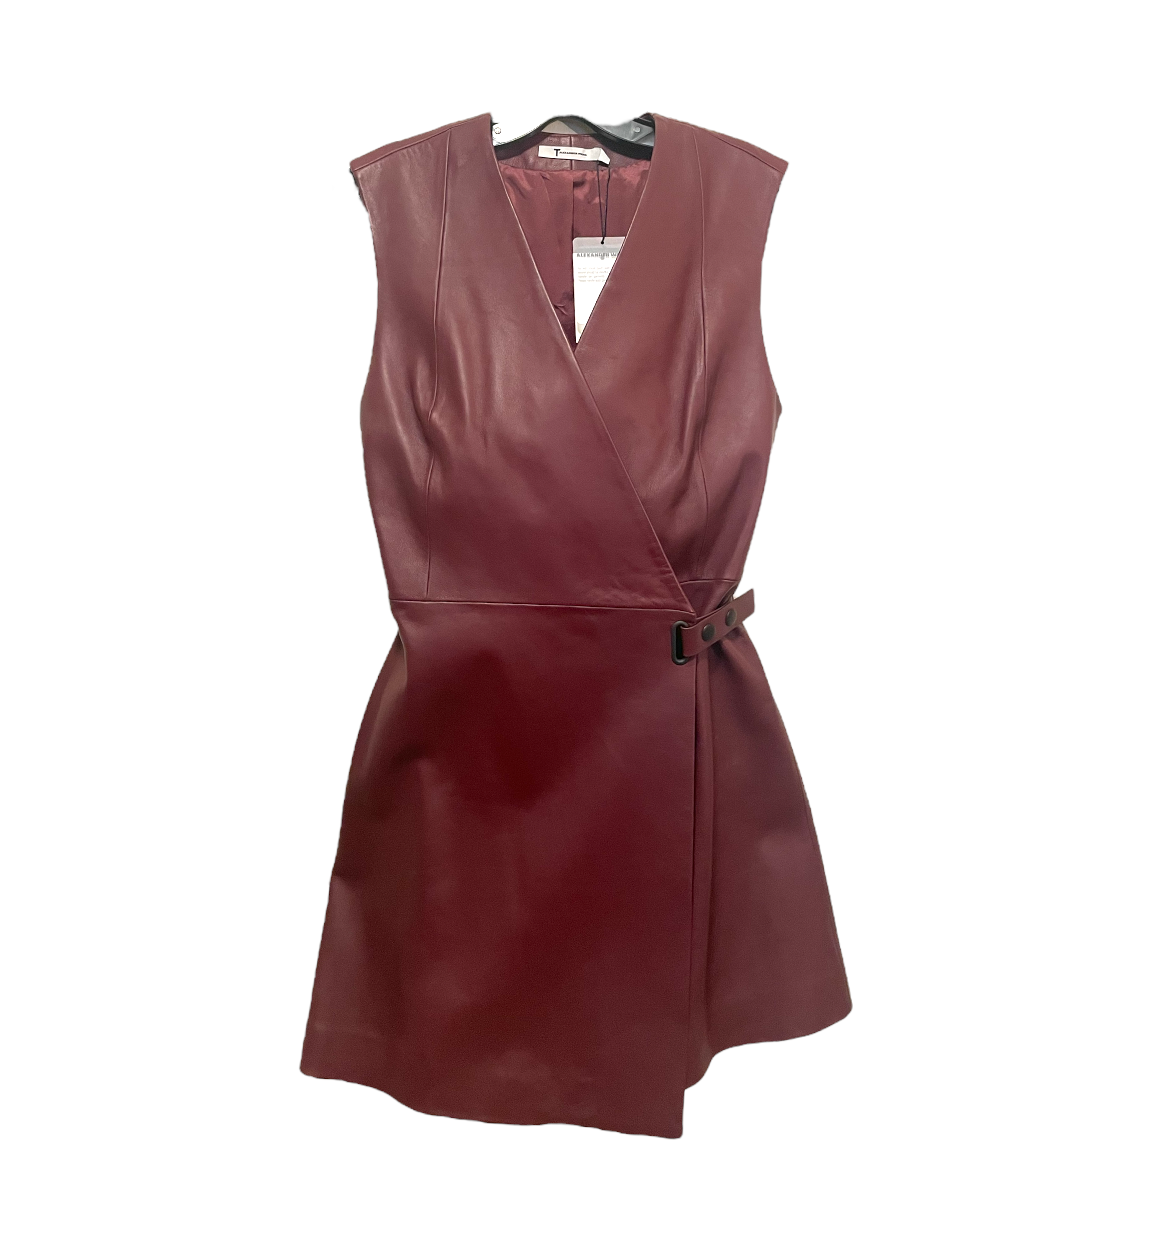 T by ALEXANDER WANG 100% Lambskin Leather Dress |Size:2|